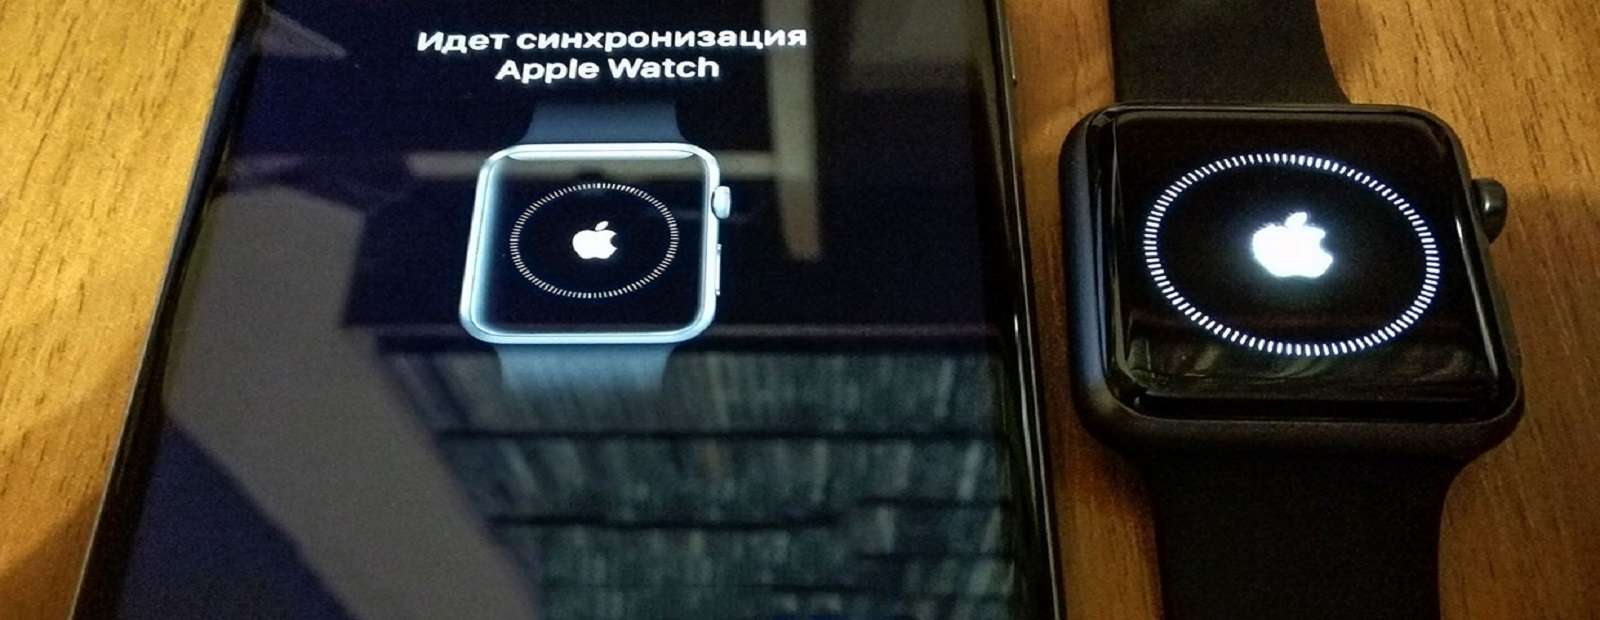 Безопасный перенос данных с Apple Watch